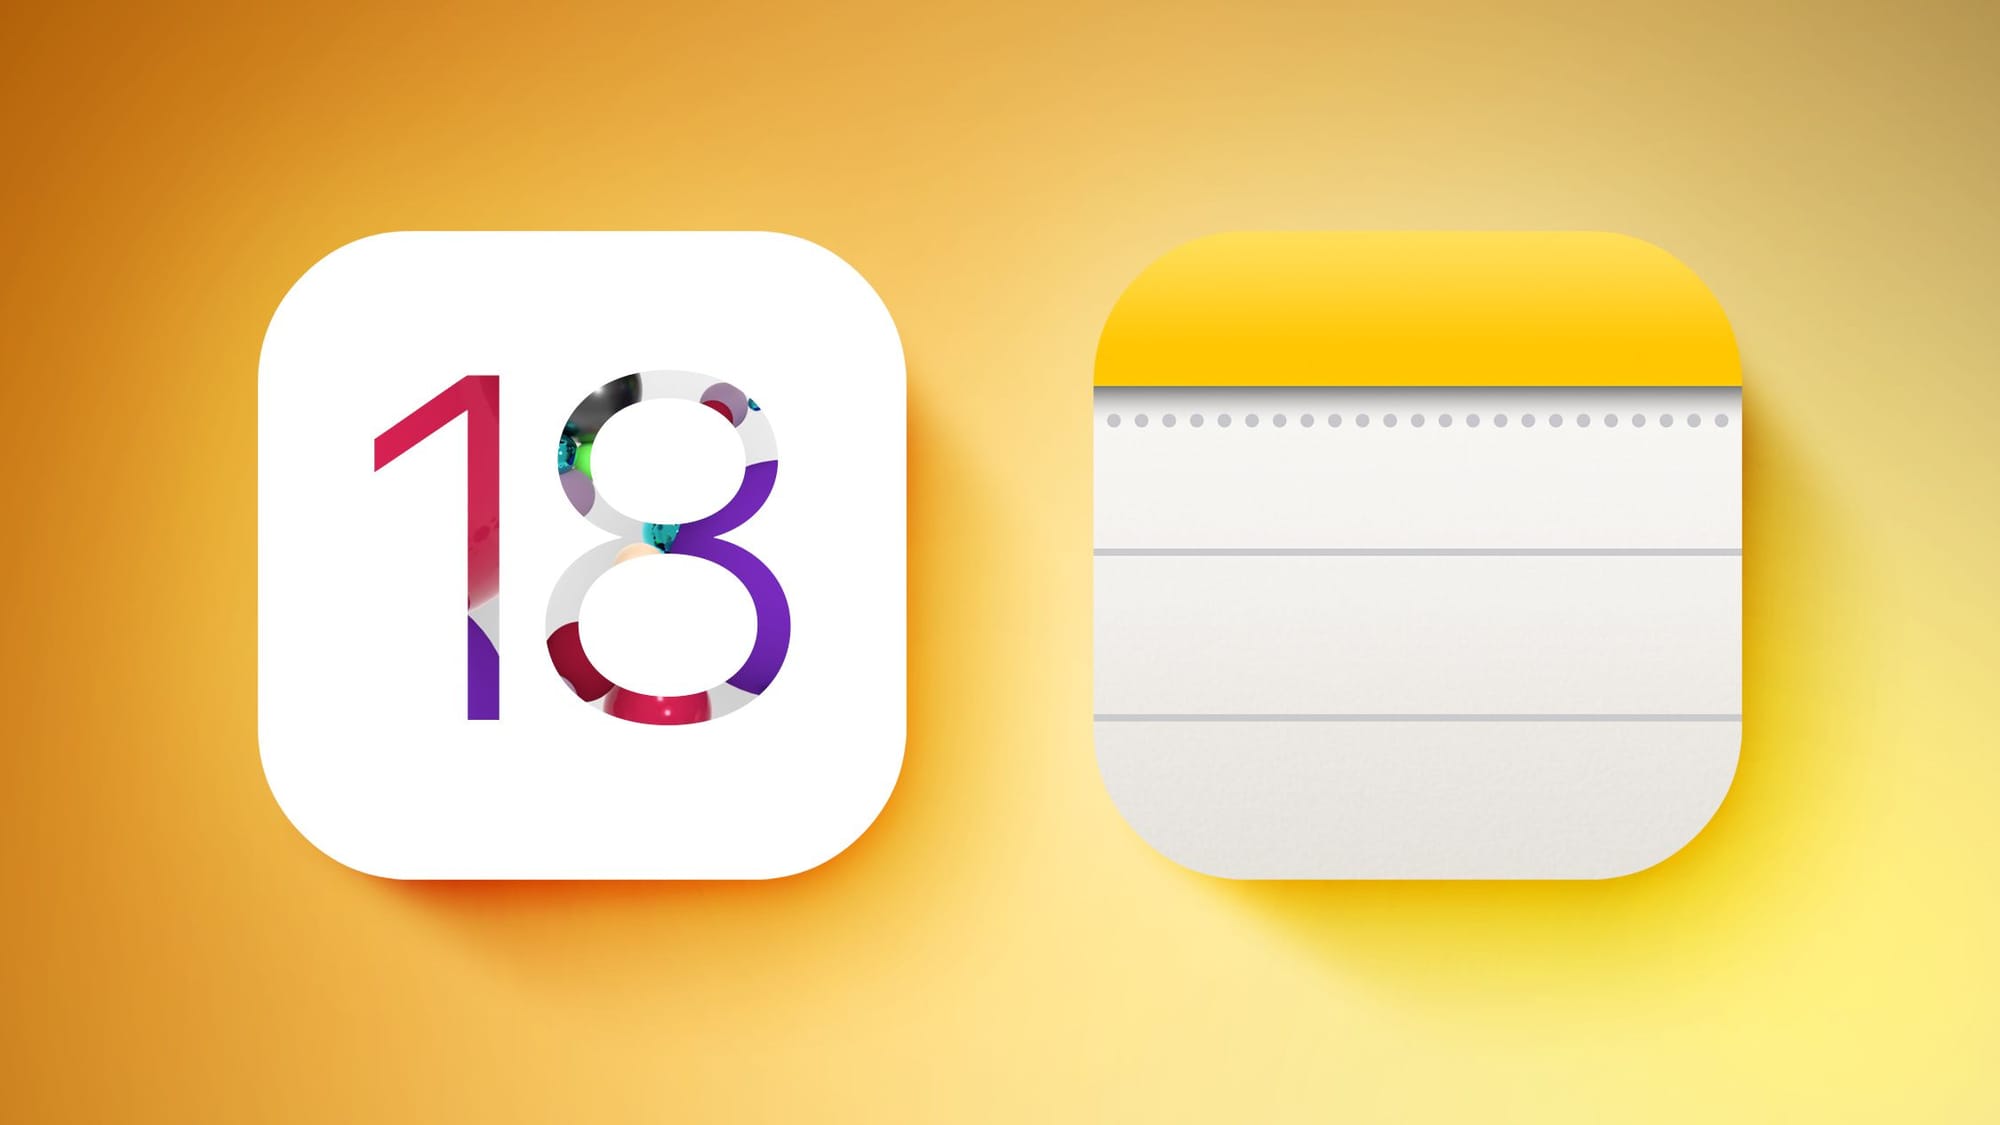 Приложение «Заметки» для iOS 18 поддерживает цвета для выделения набранного текста